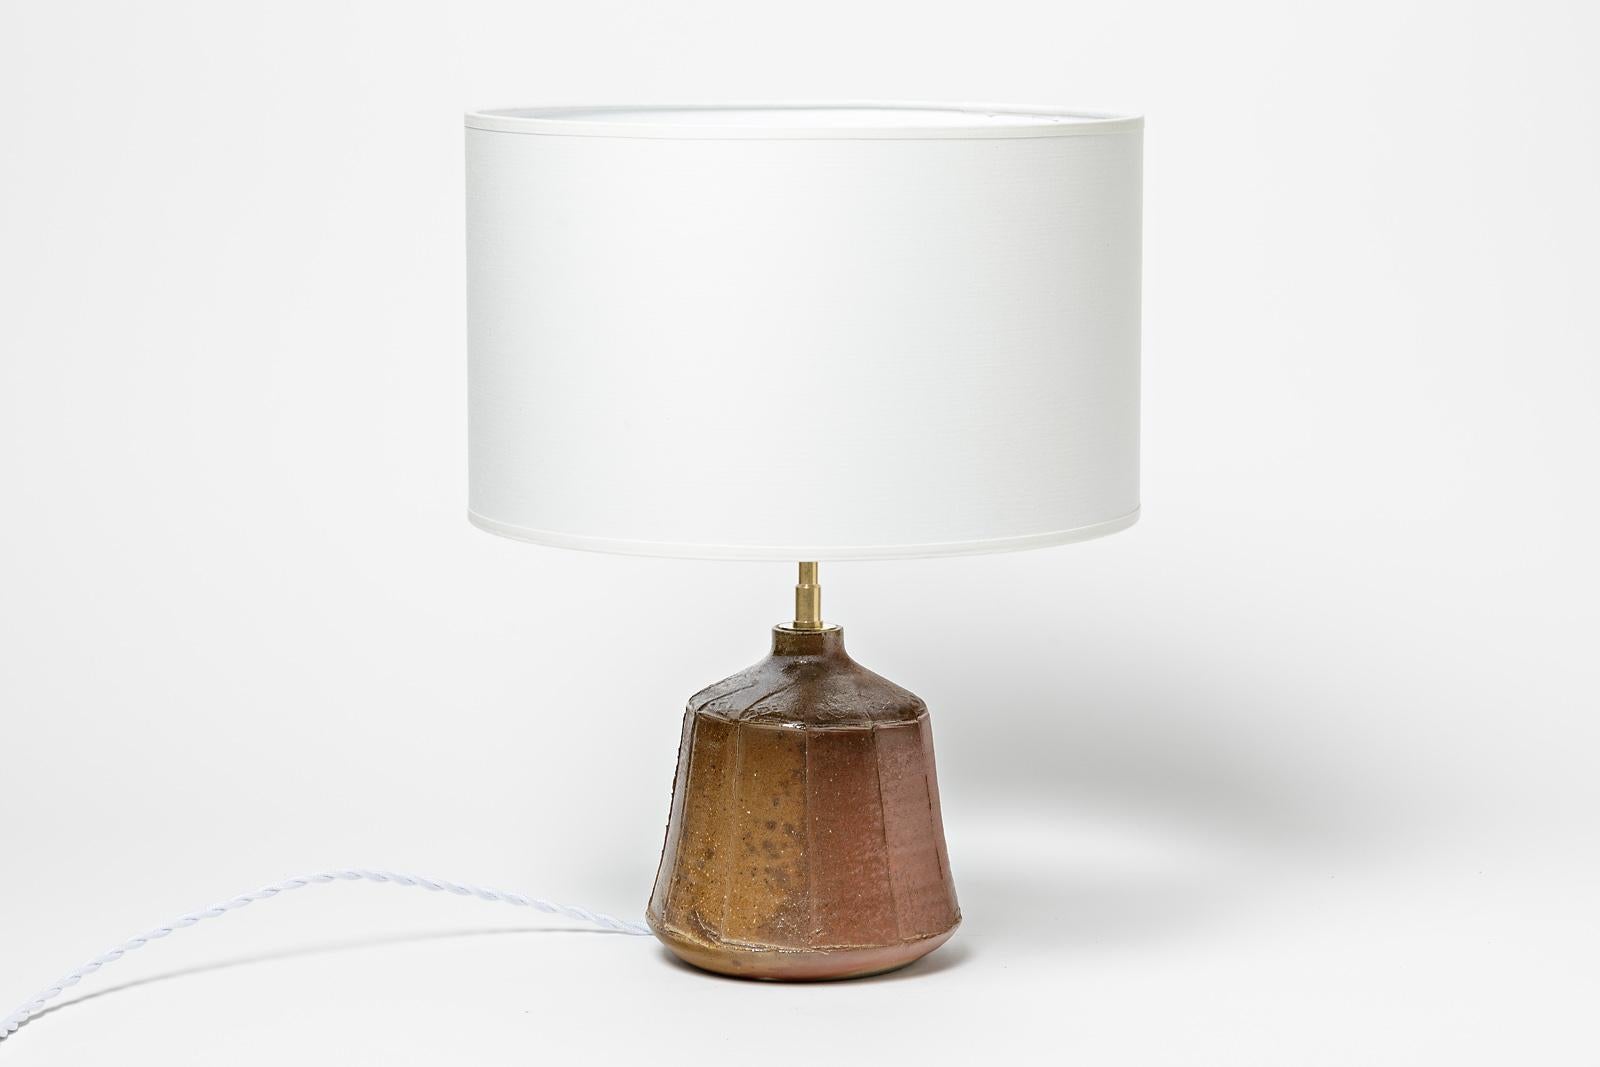 French Brown Stoneware Ceramic Table Lamp by La Borne Potters circa 1980 Design For Sale